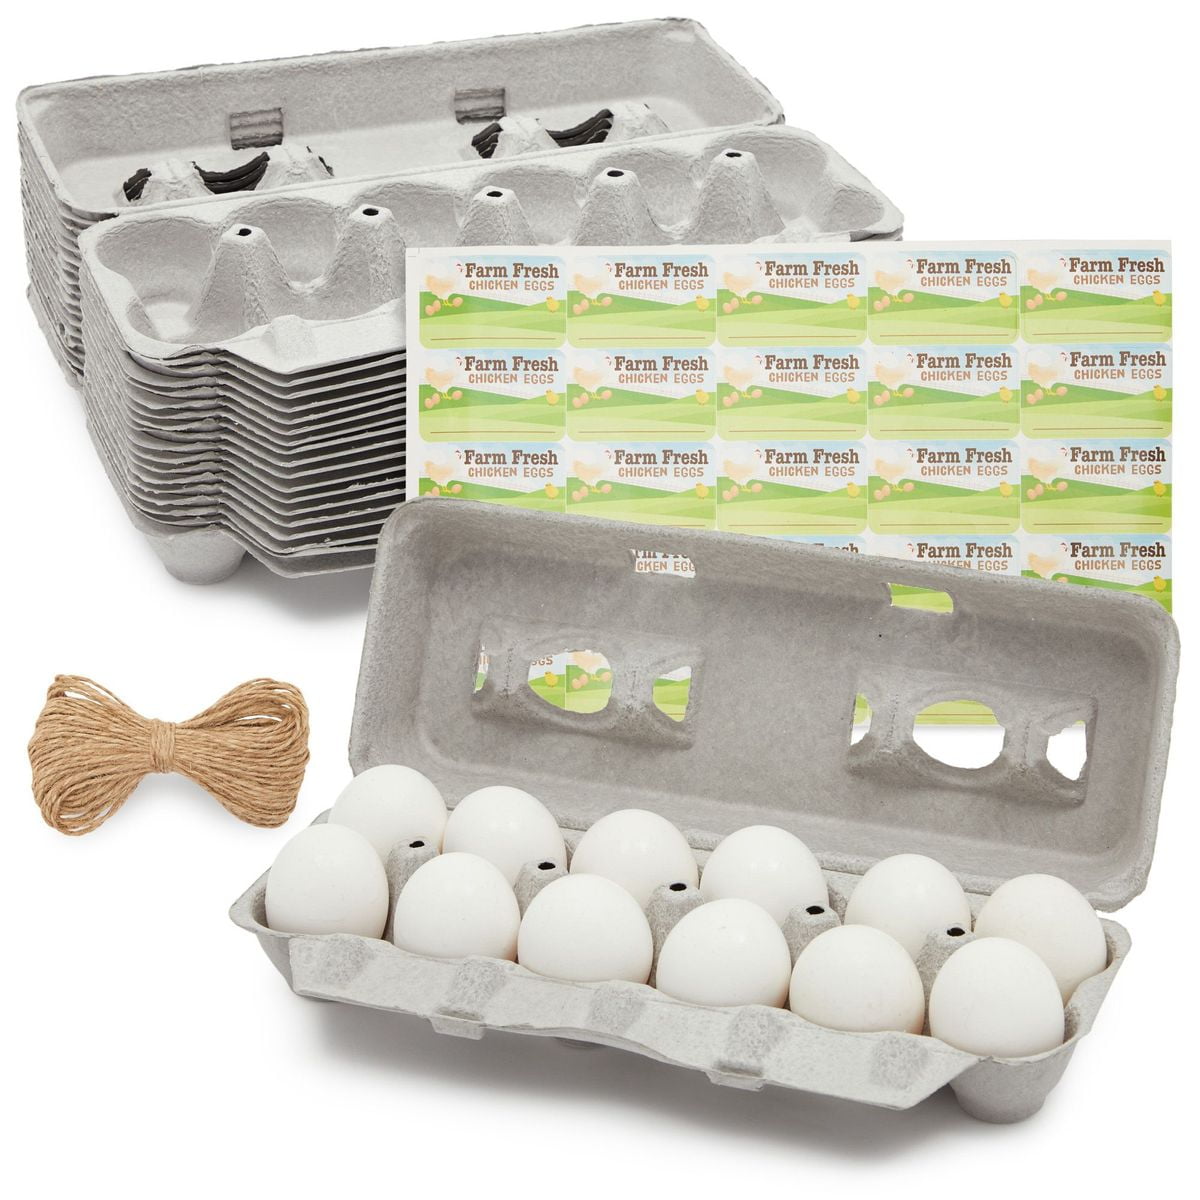 48 Pack Egg Cartons Bulk Holds 1 Dozen Chicken Eggs with Date